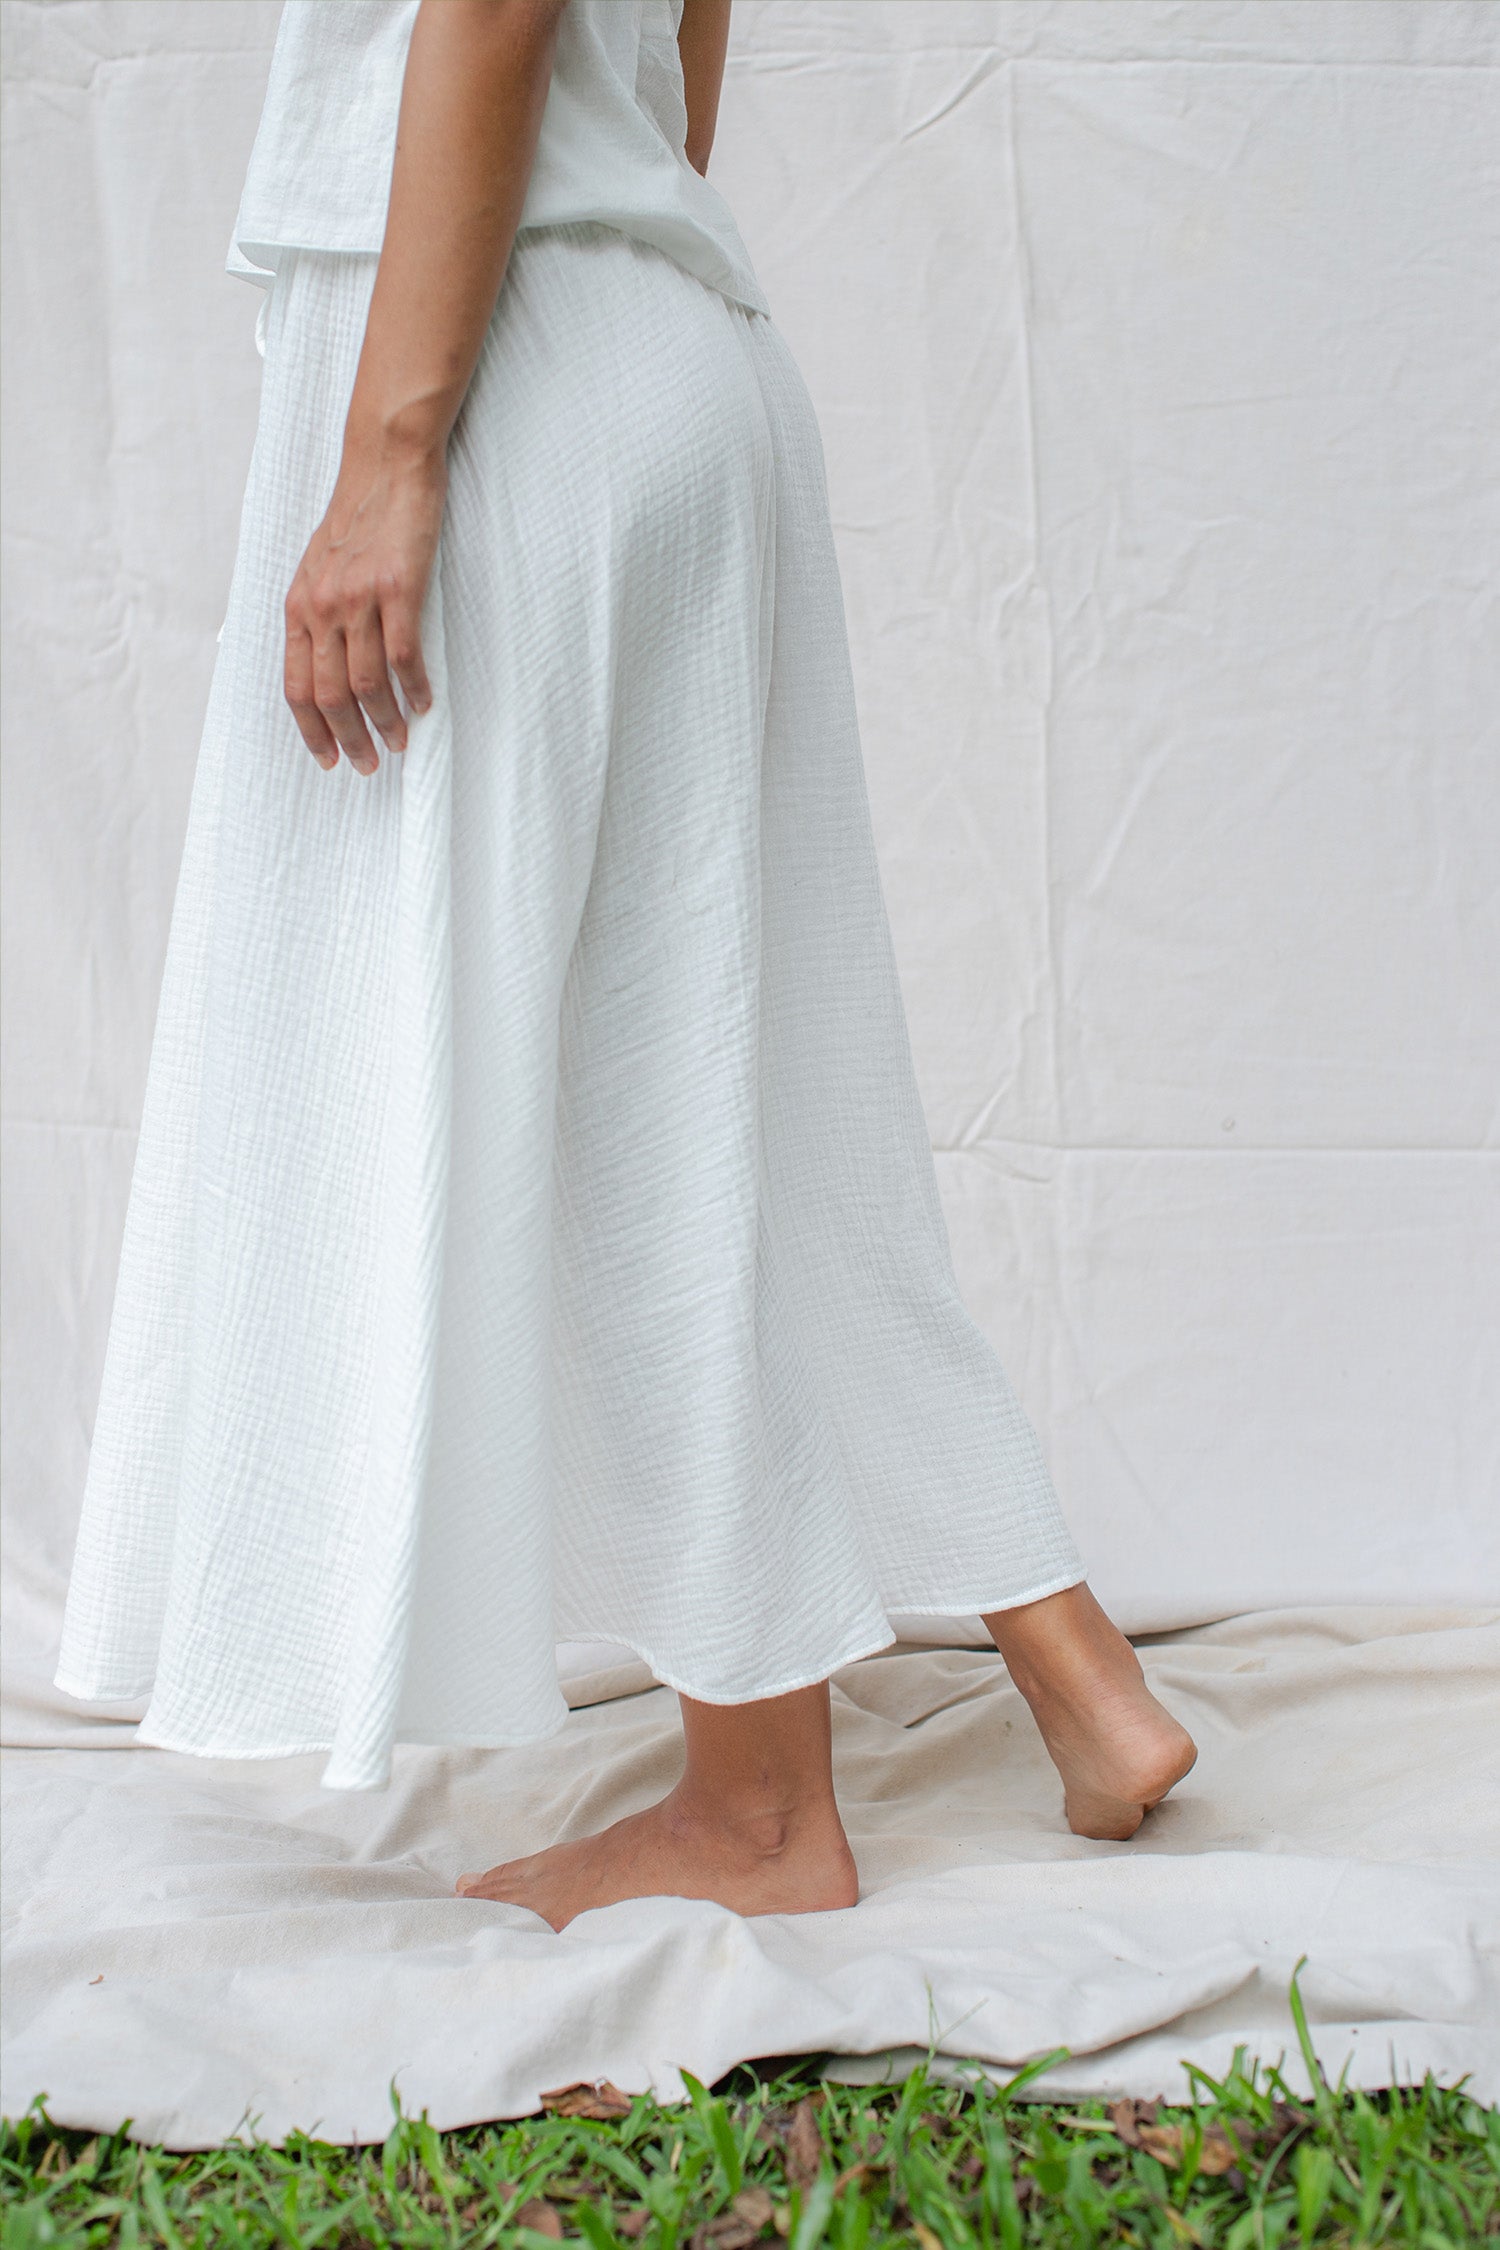 https://indigoluna.store/cdn/shop/files/Mokki-Skirt-off-white-8.jpg?v=1704790062&amp;width=1920